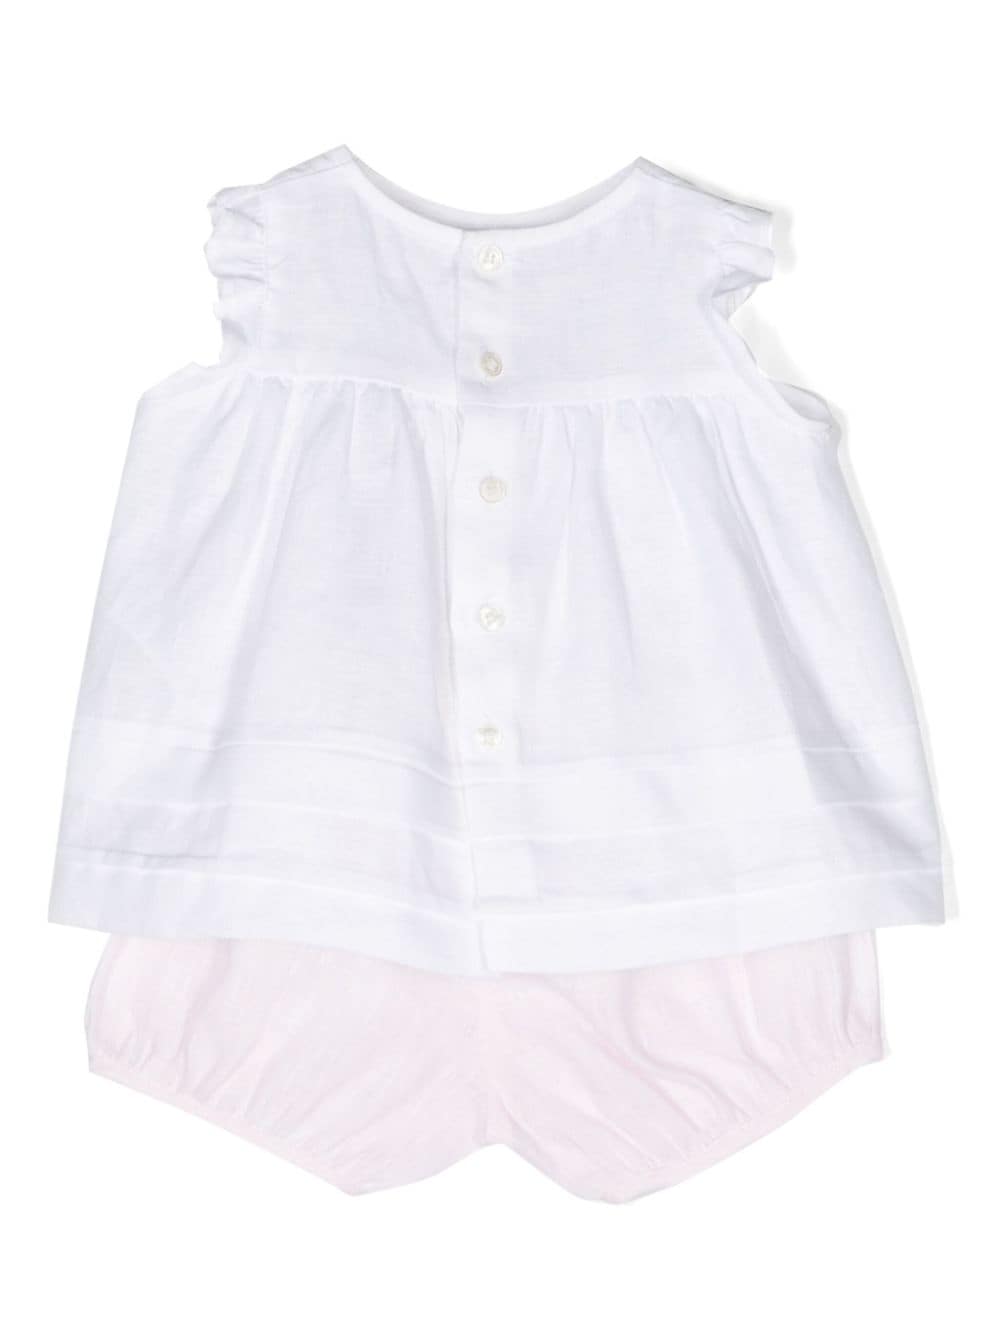 Completo neonata blusa/ short lino